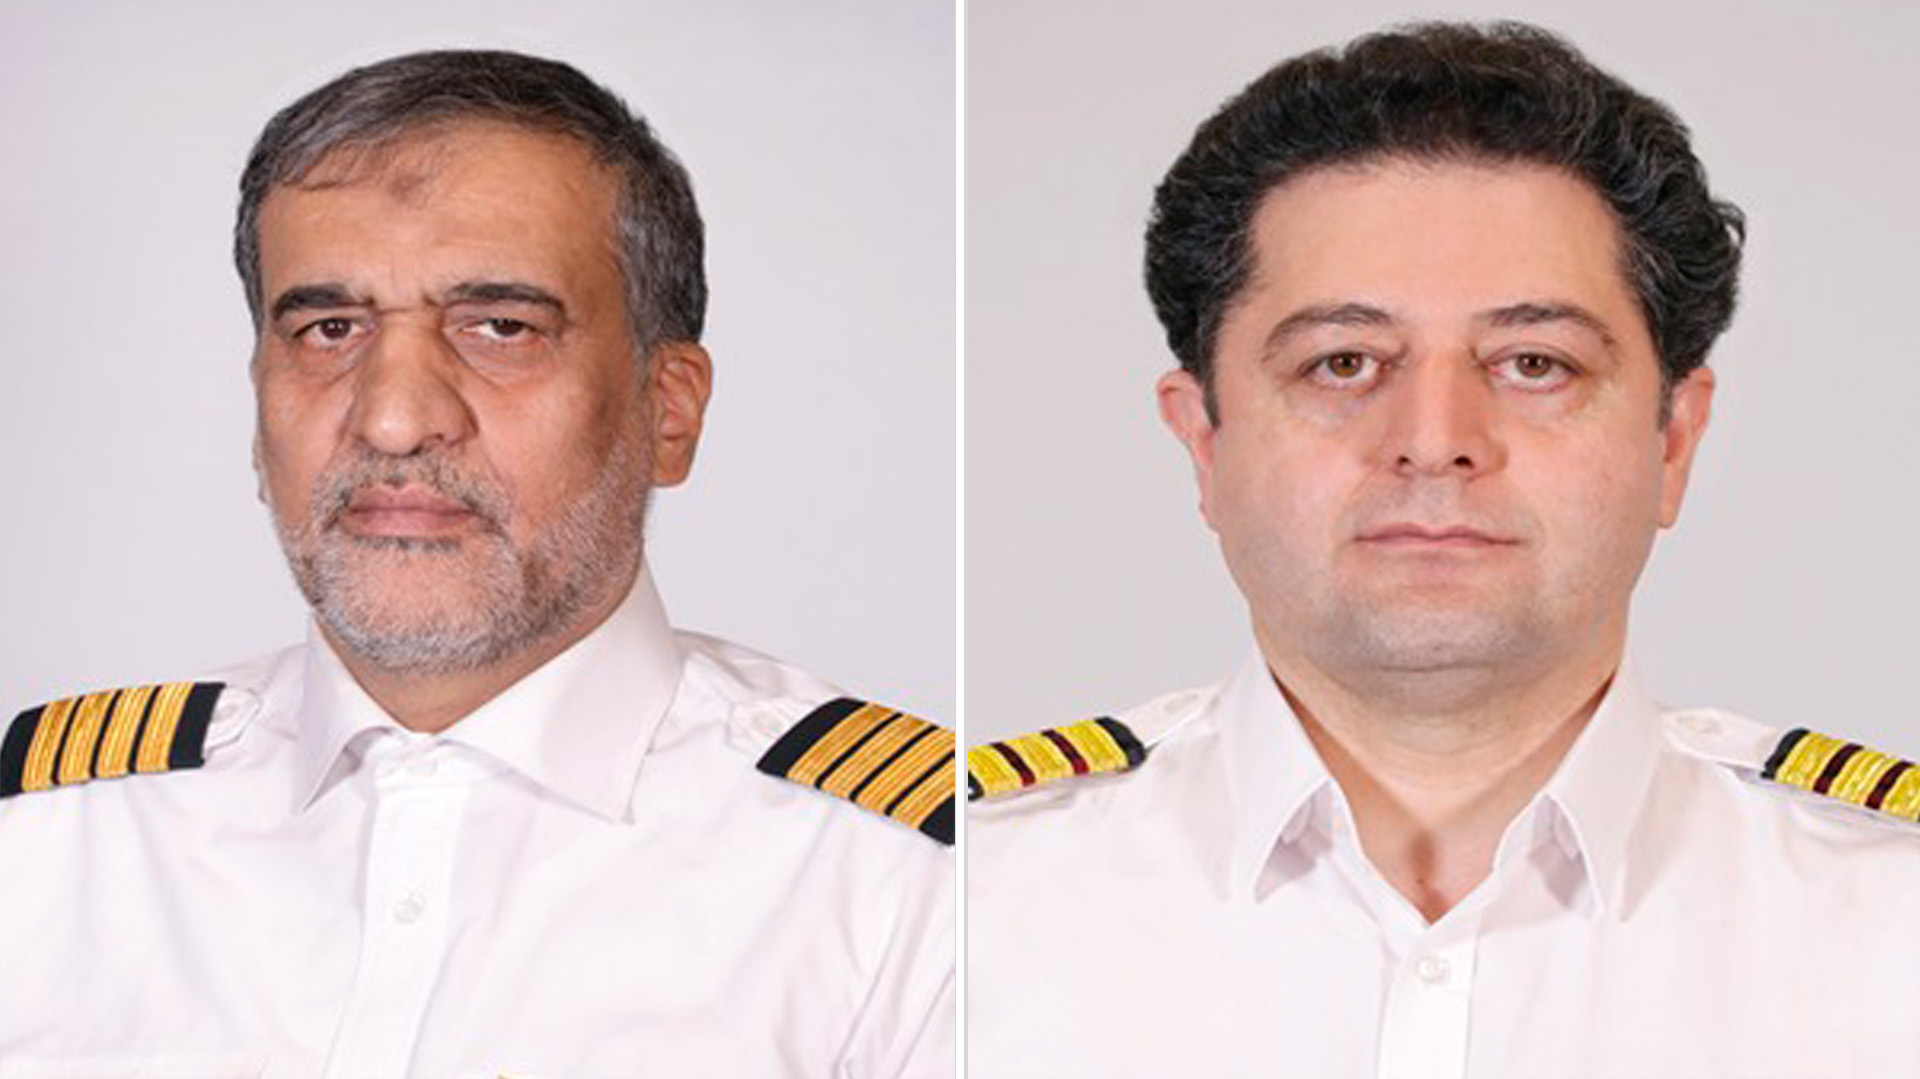 Pilota e copilota quando sospettato.  A sinistra, Gholam Reza Qasemi, associato alla Forza Quds.  A destra, Mehdi Mousli